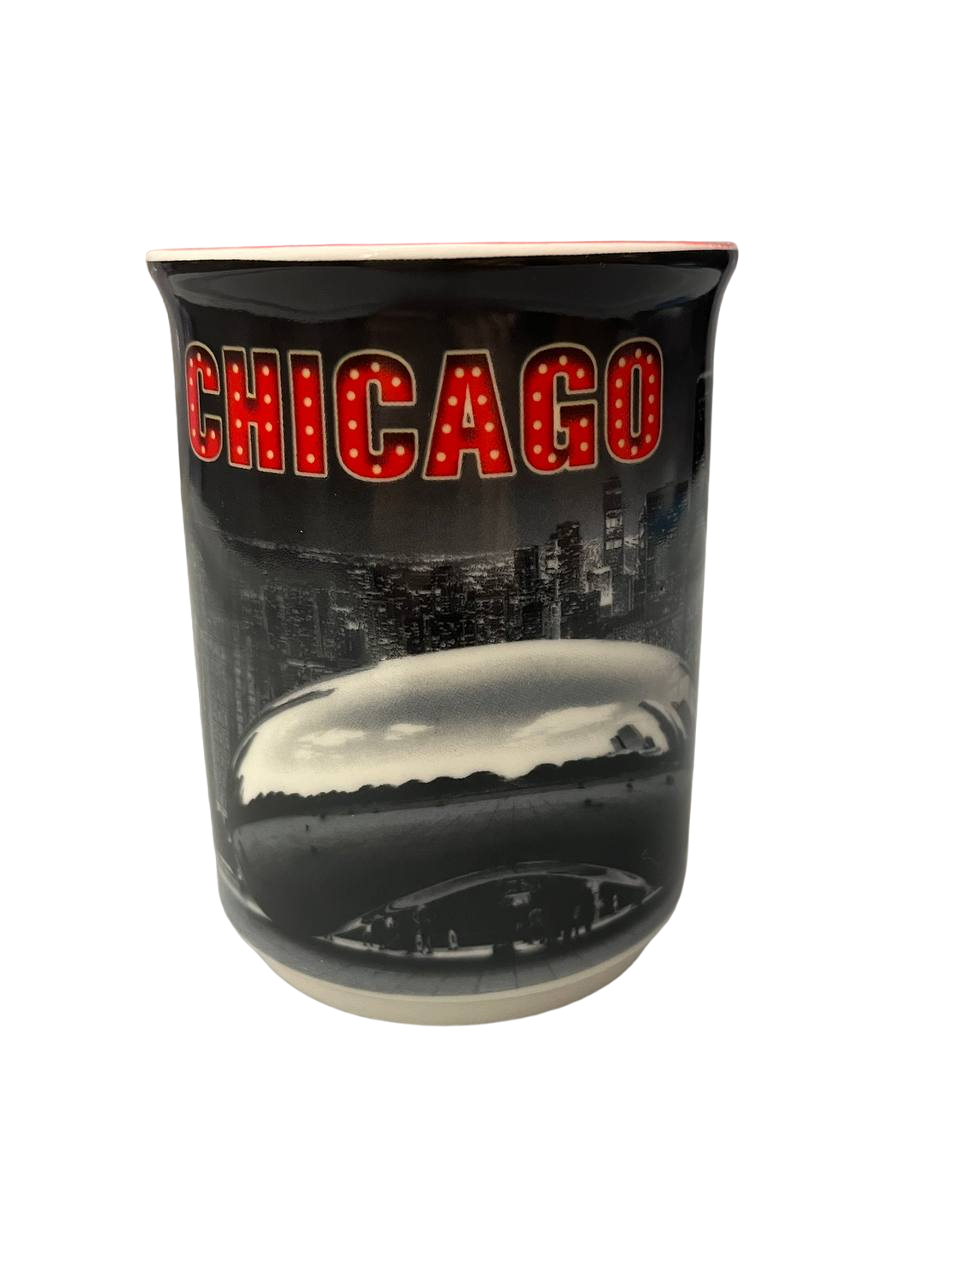 Chicago City Mugs USA